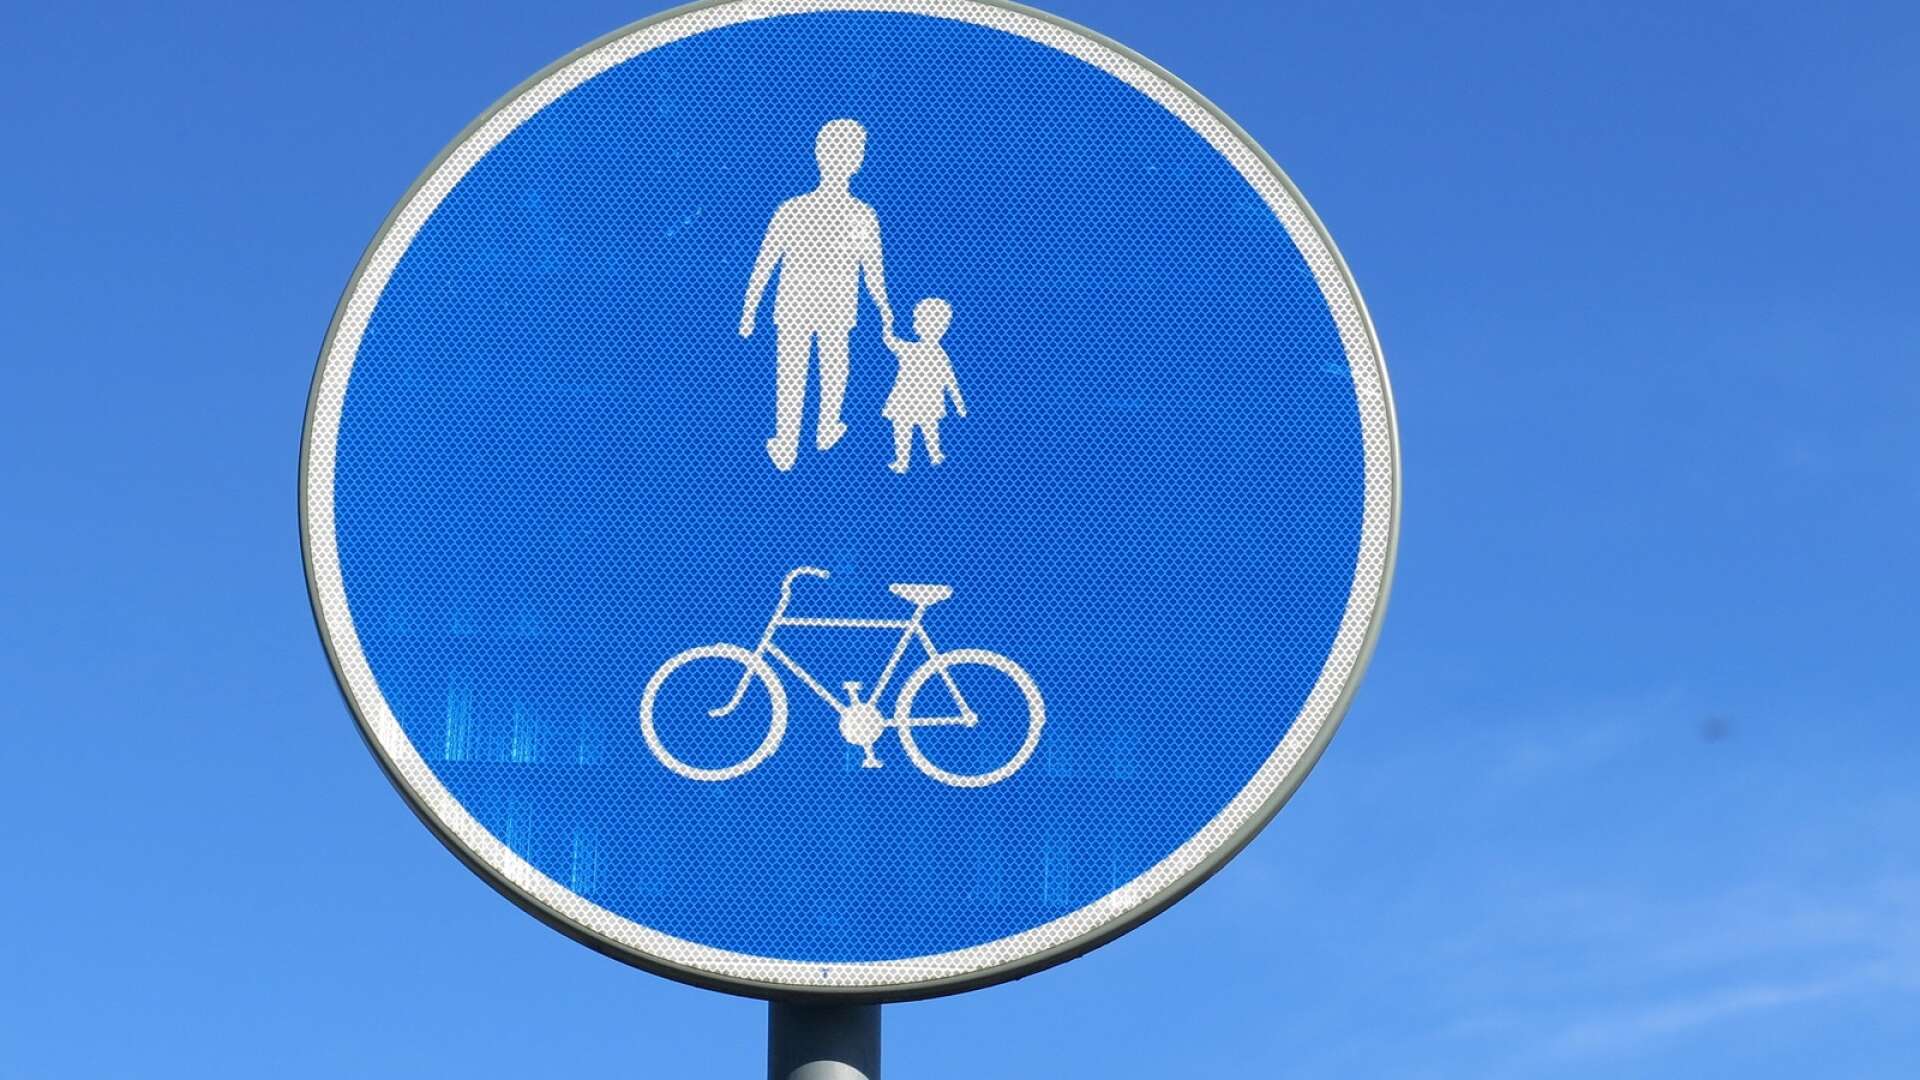 ”Varje år inför arbetet med strategisk plan lämnar vi förslag på nya åtgärder som syftar till att förbättra gång- och cykelinfrastrukturen”, skriver Ida Svensson.